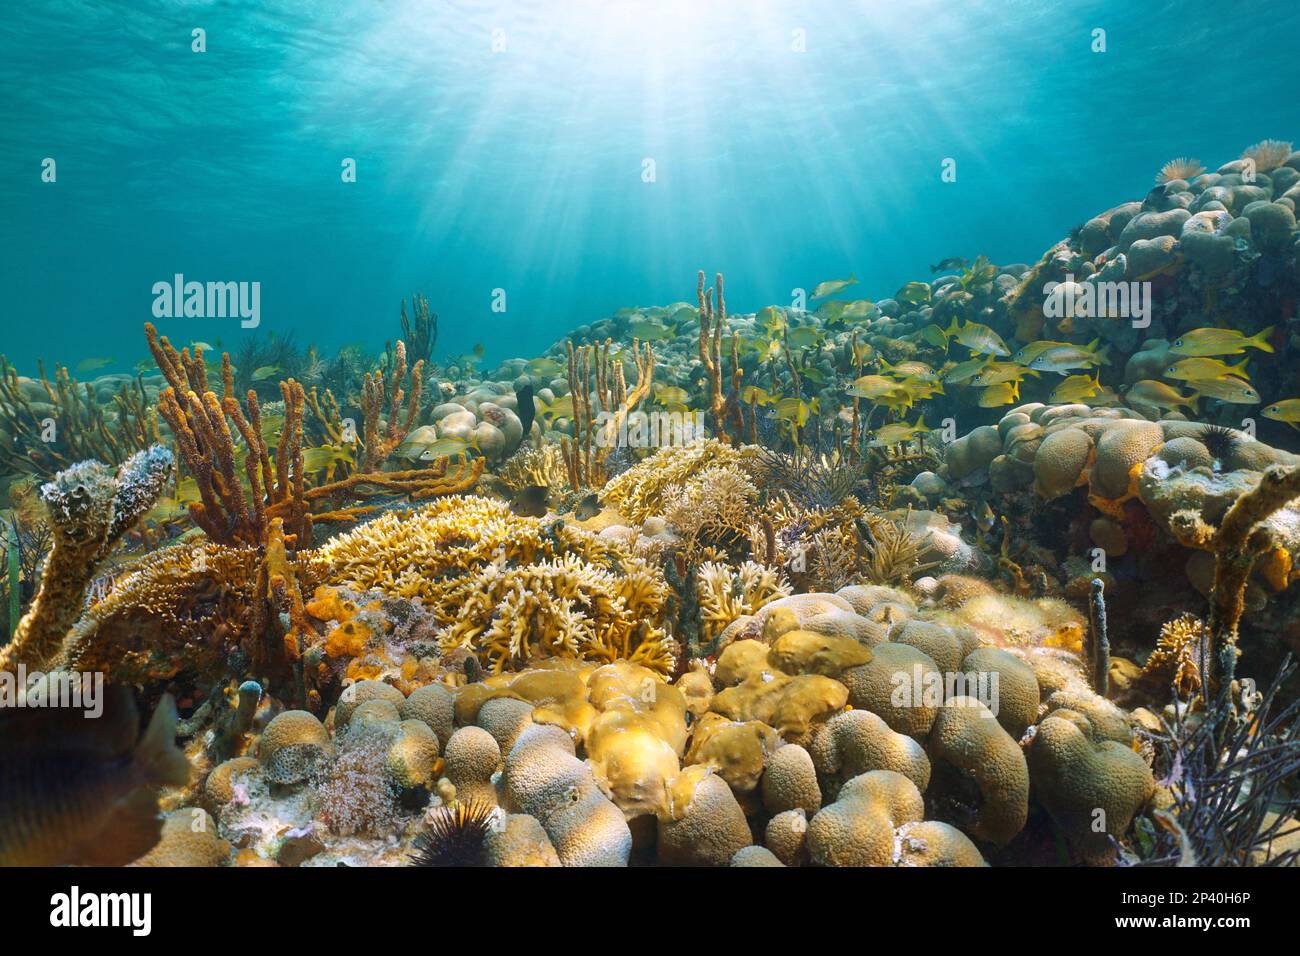 Soleil sous l'eau dans un récif de corail avec poissons tropicaux, mer des Caraïbes, Mexique Banque D'Images